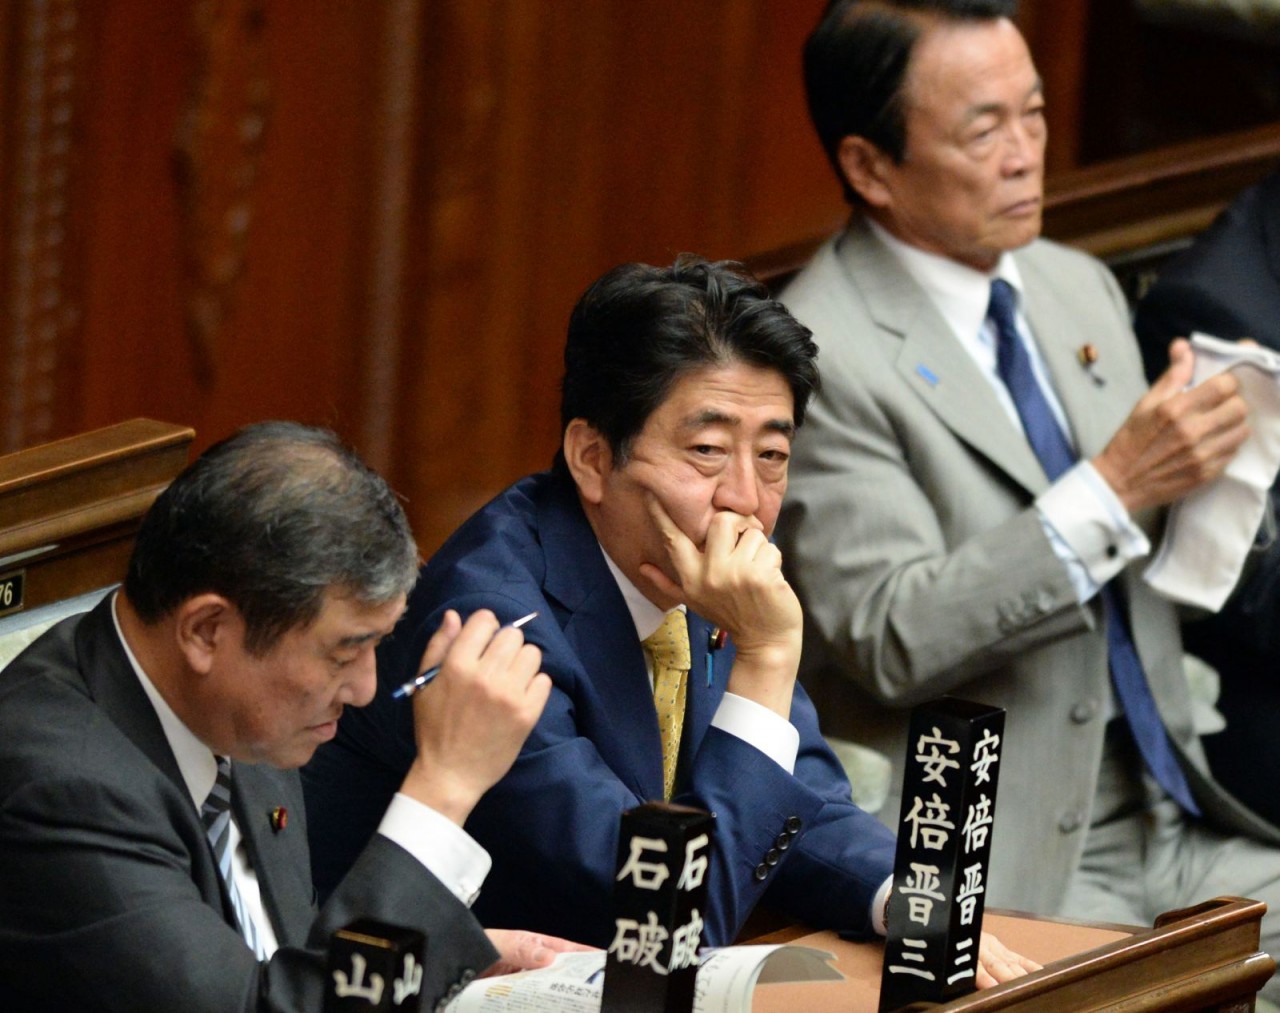 Cuộc đời cựu Thủ tướng Nhật Bản Abe Shinzo qua ảnh - Ảnh 11.